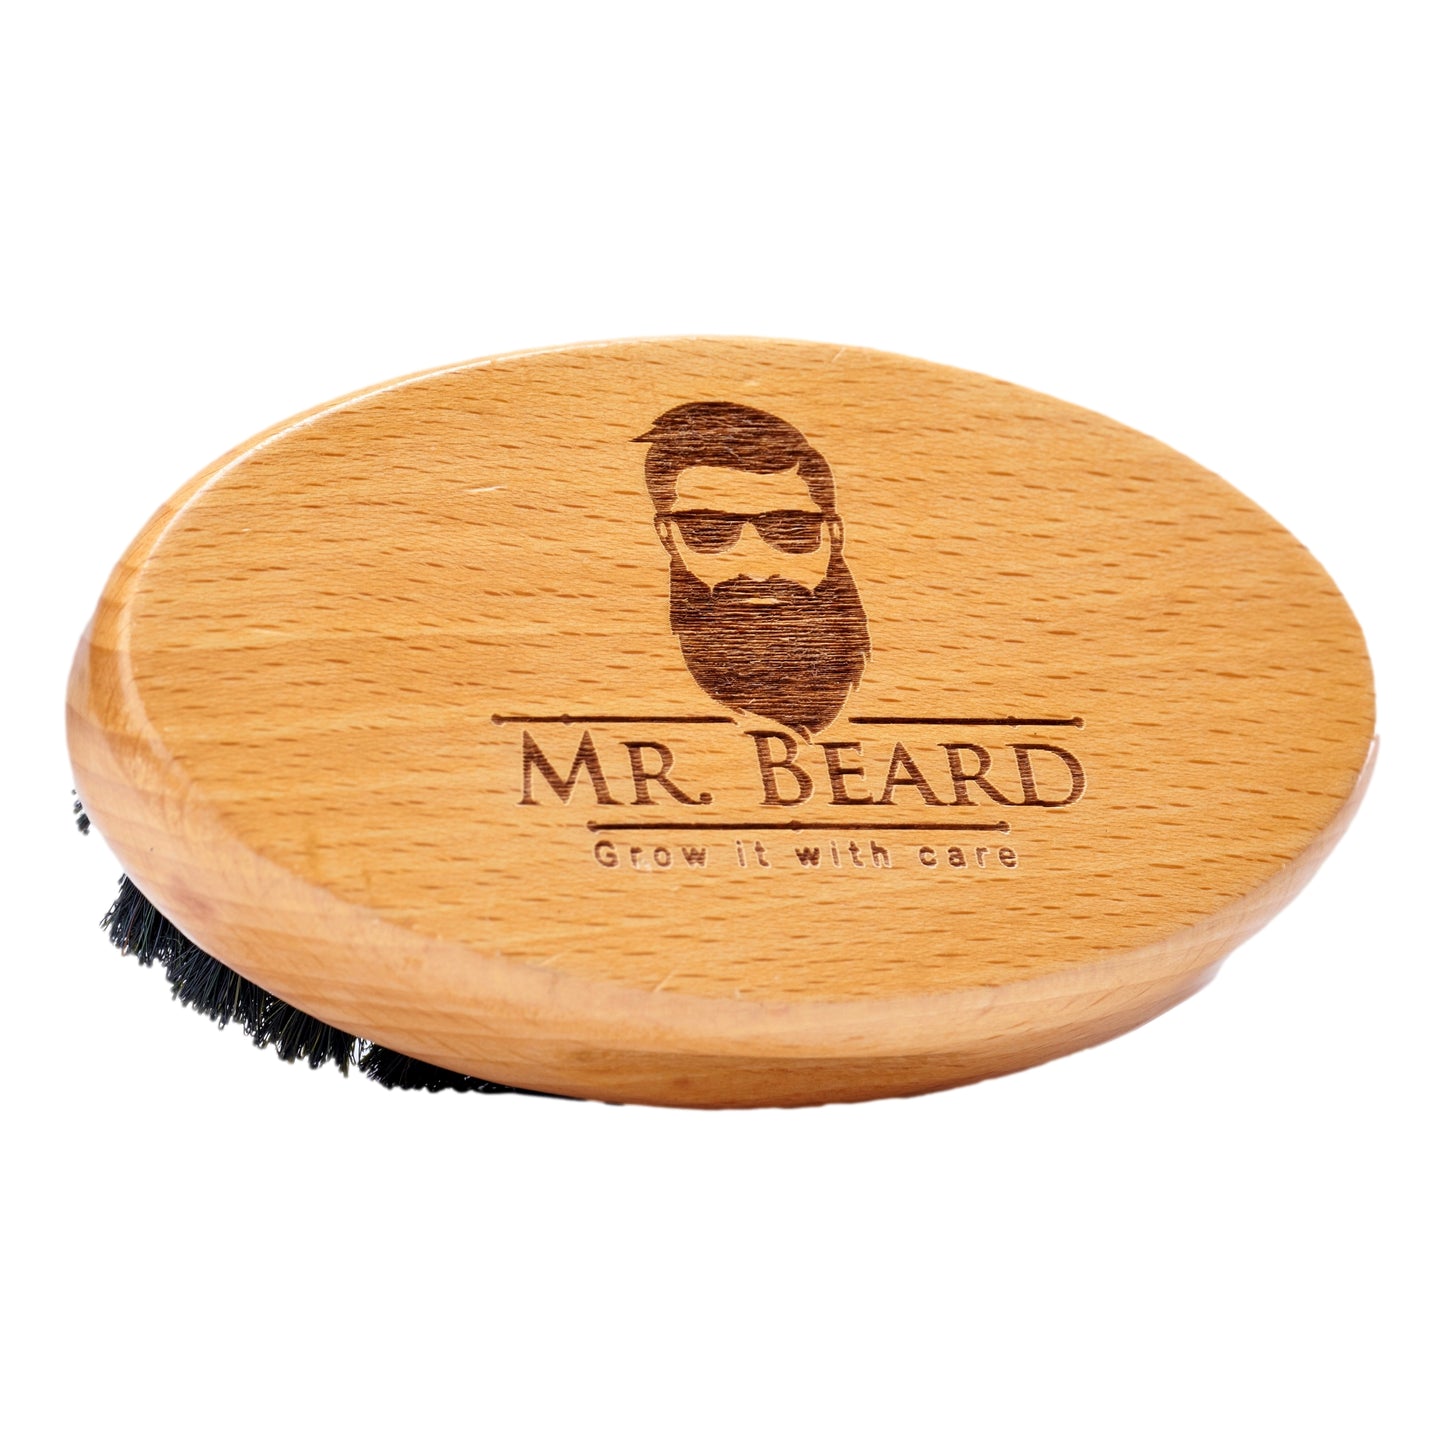 Beard Brush - Mr.Beard Egypt